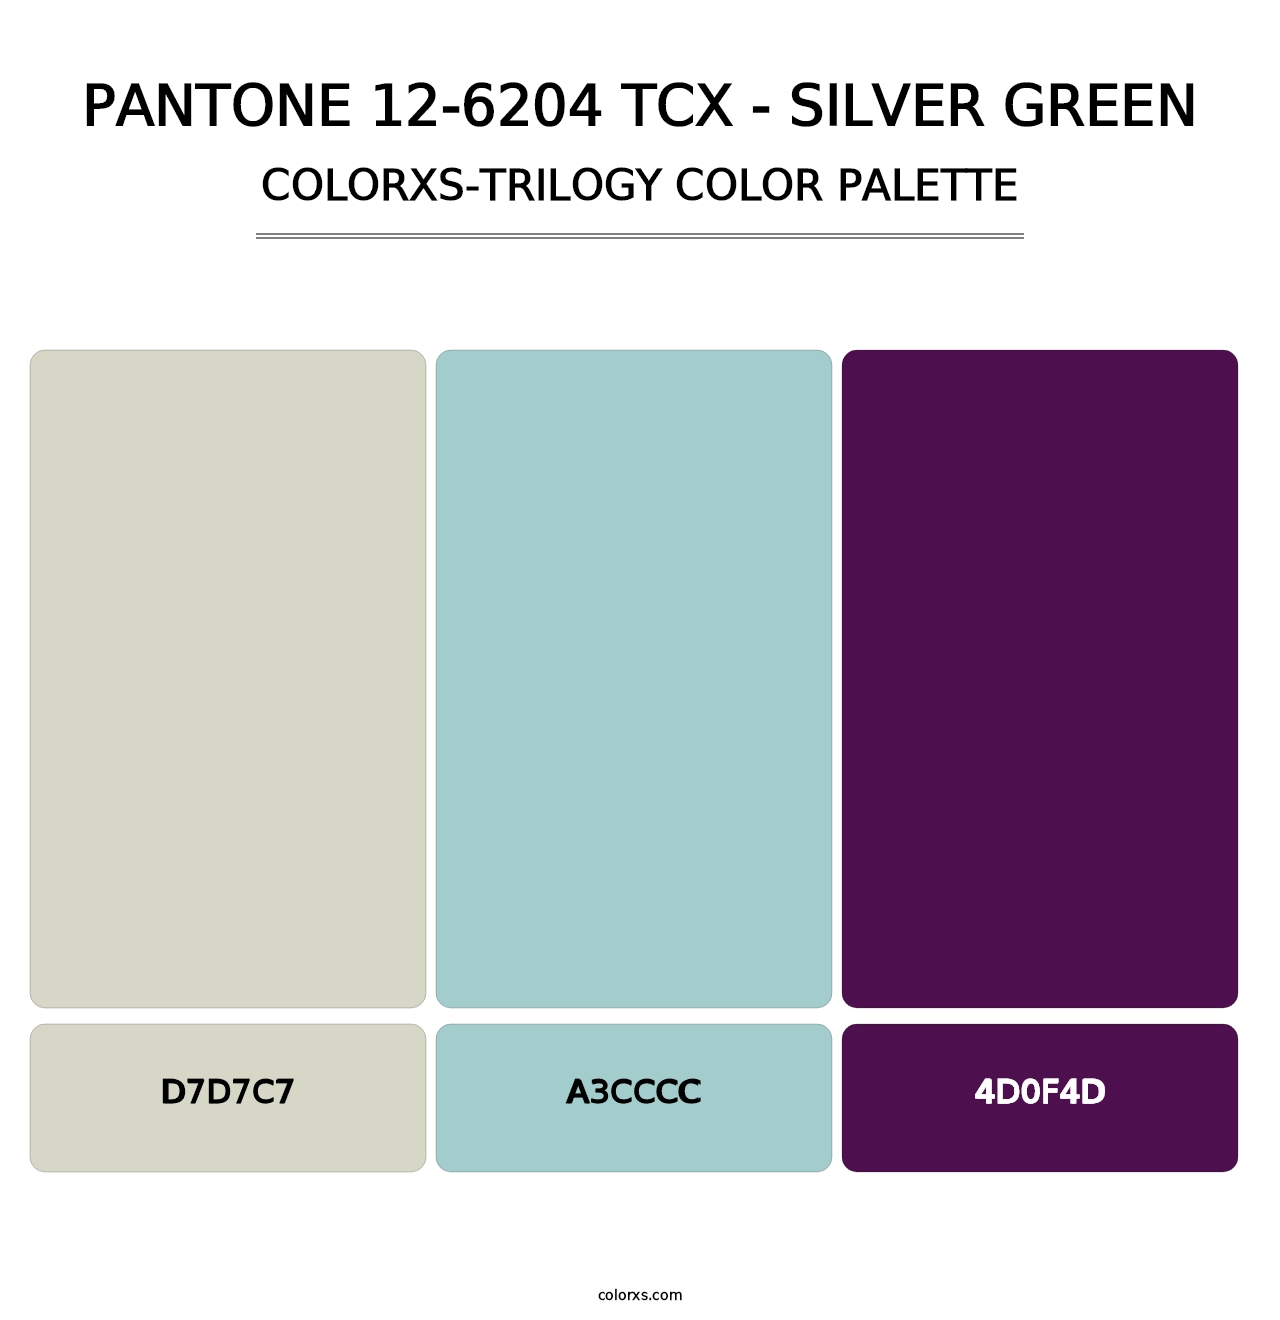 PANTONE 12-6204 TCX - Silver Green - Colorxs Trilogy Palette